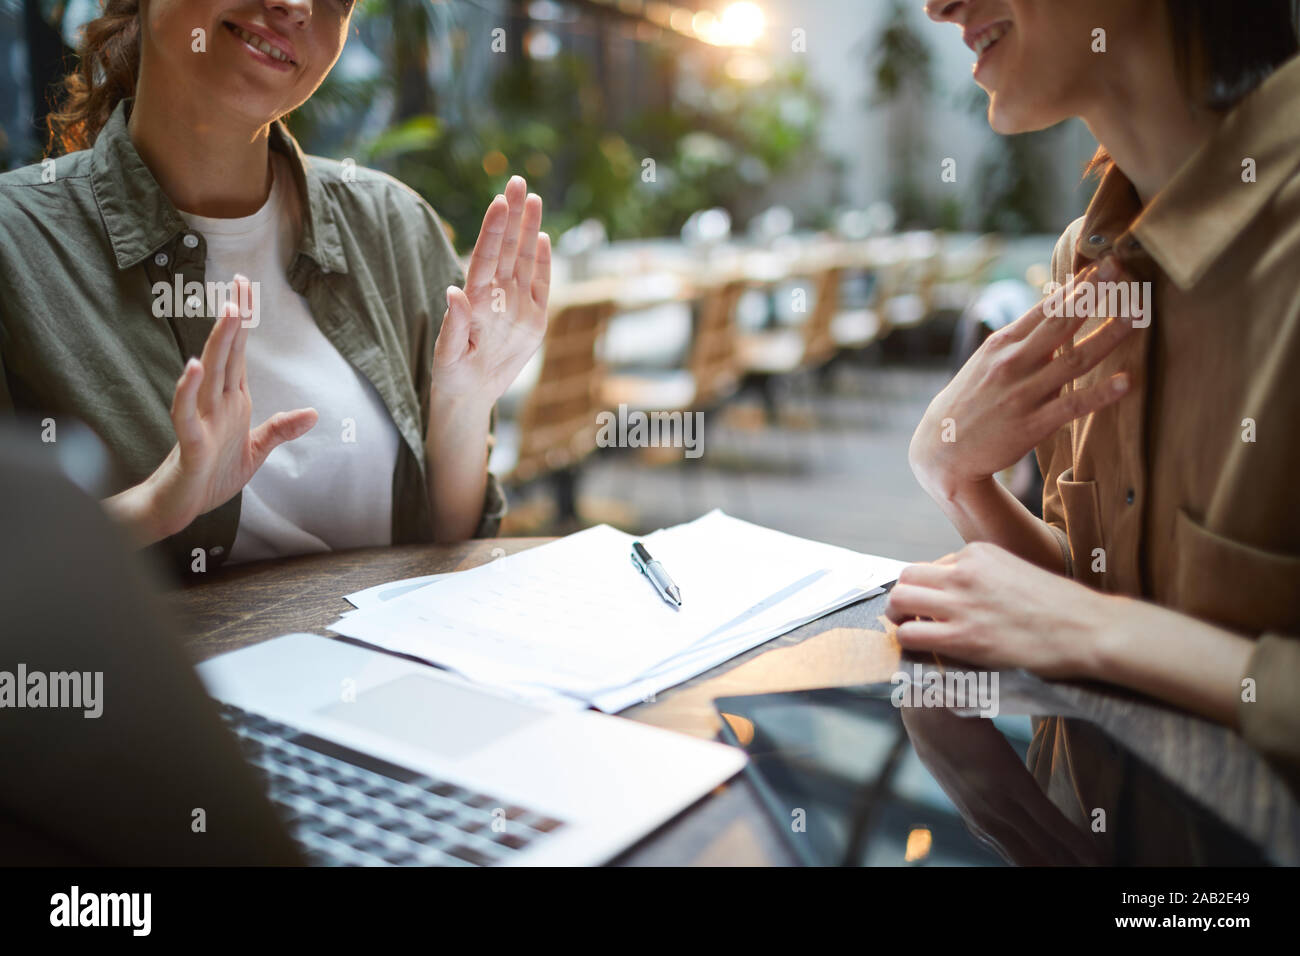 Nahaufnahme des unkenntlich junge Frau aktiv gestikuliert während der Sitzung im Cafe mit weiblichen Partner über Tabelle, kopieren Raum Stockfoto